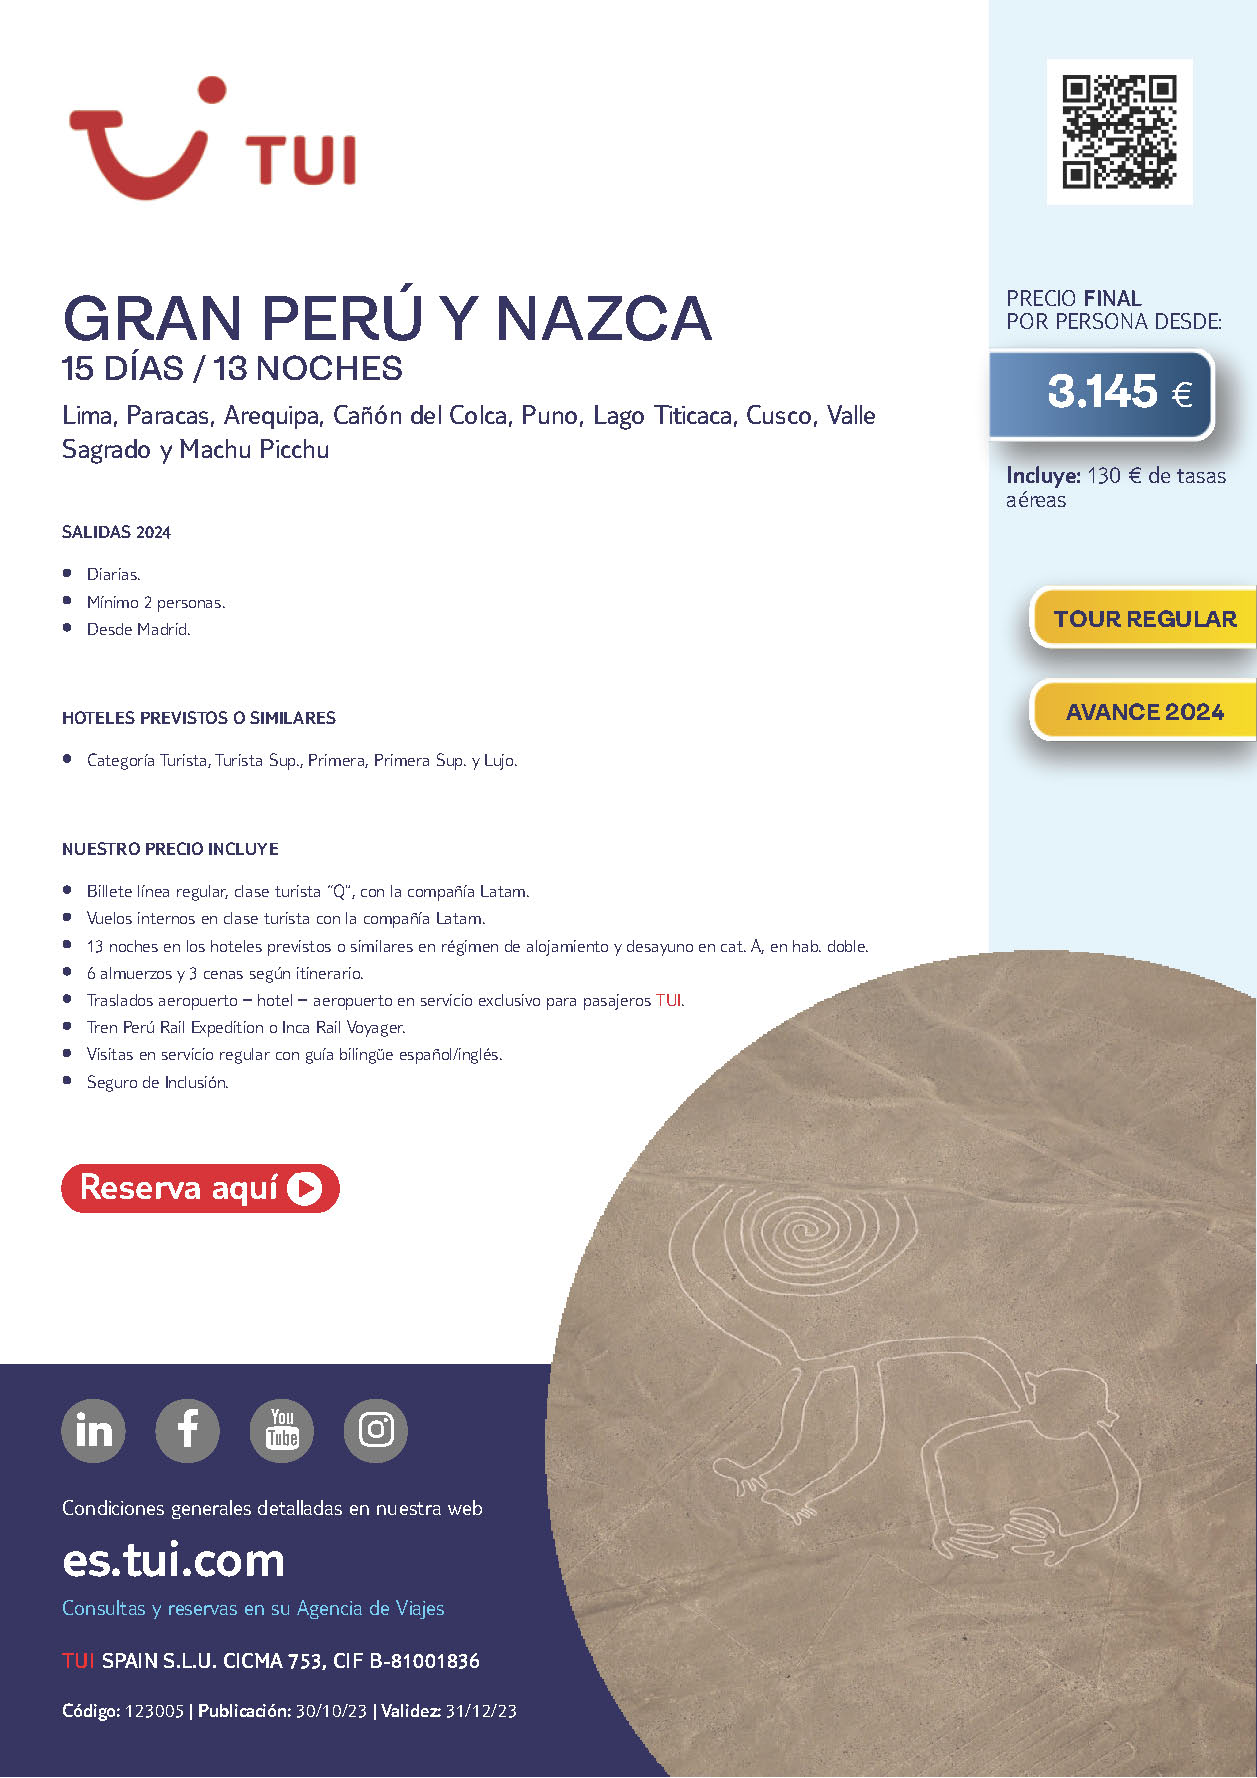 Oferta TUI circuito Gran Peru y Lineas de Nazca 15 dias salidas Junio a Diciembre 2024 desde Madrid vuelos Latam